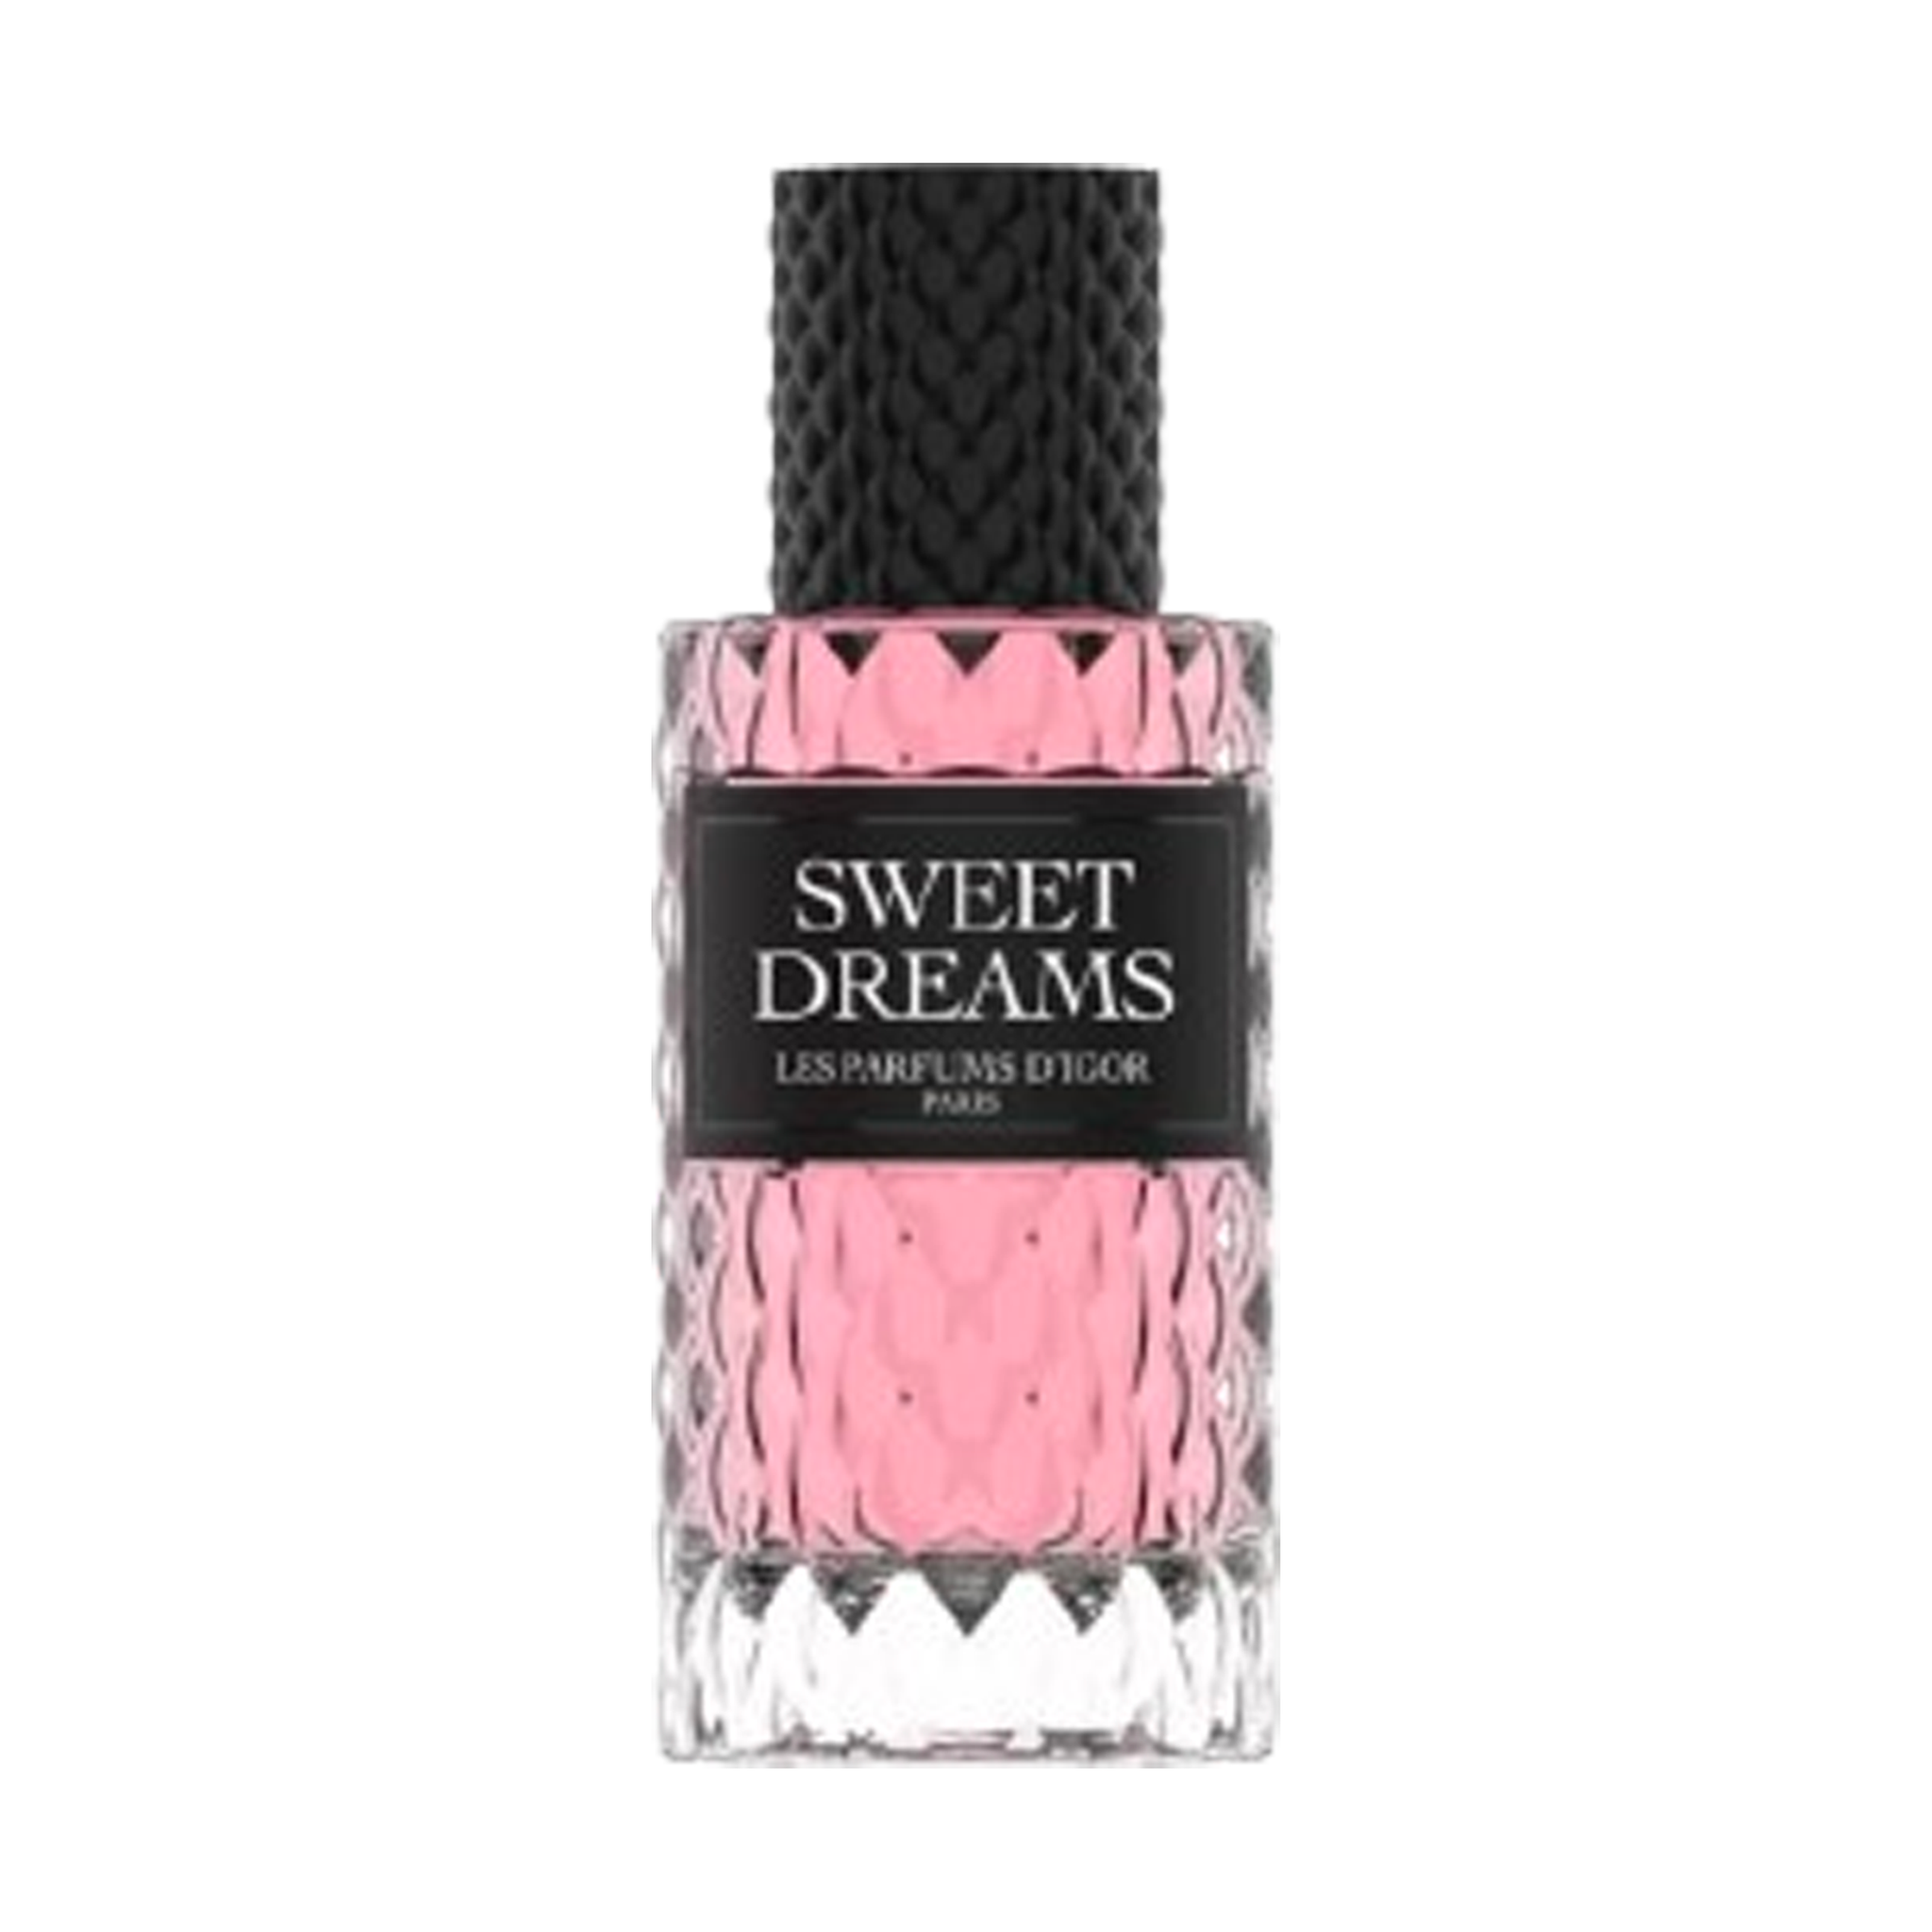 Sweet Dreams - Les Parfums d'Igor